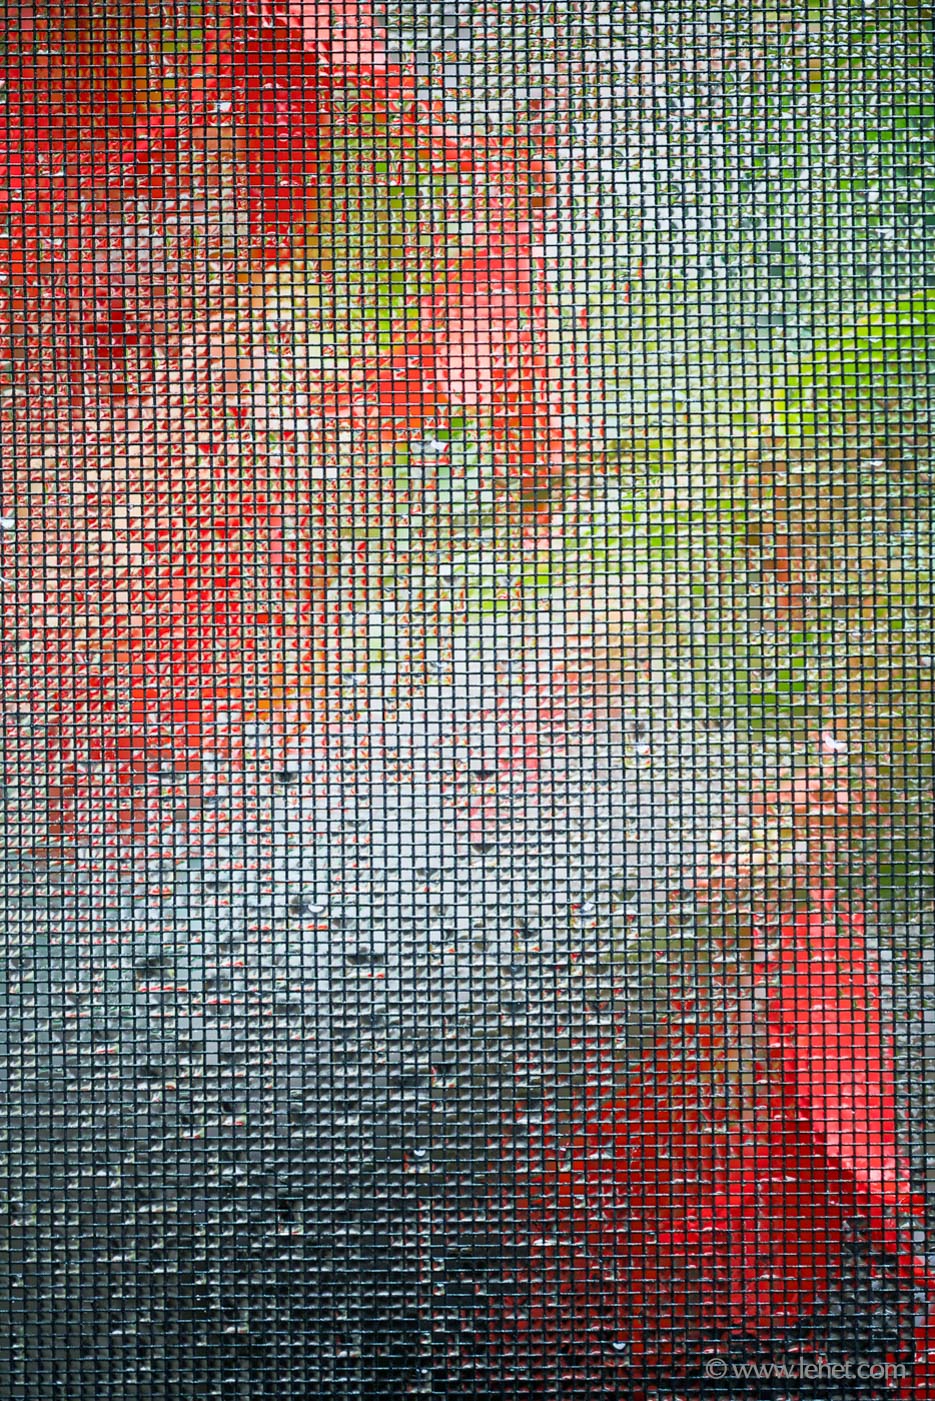 Orange and Scarlet Begonias Through Wet Screen, Vertical